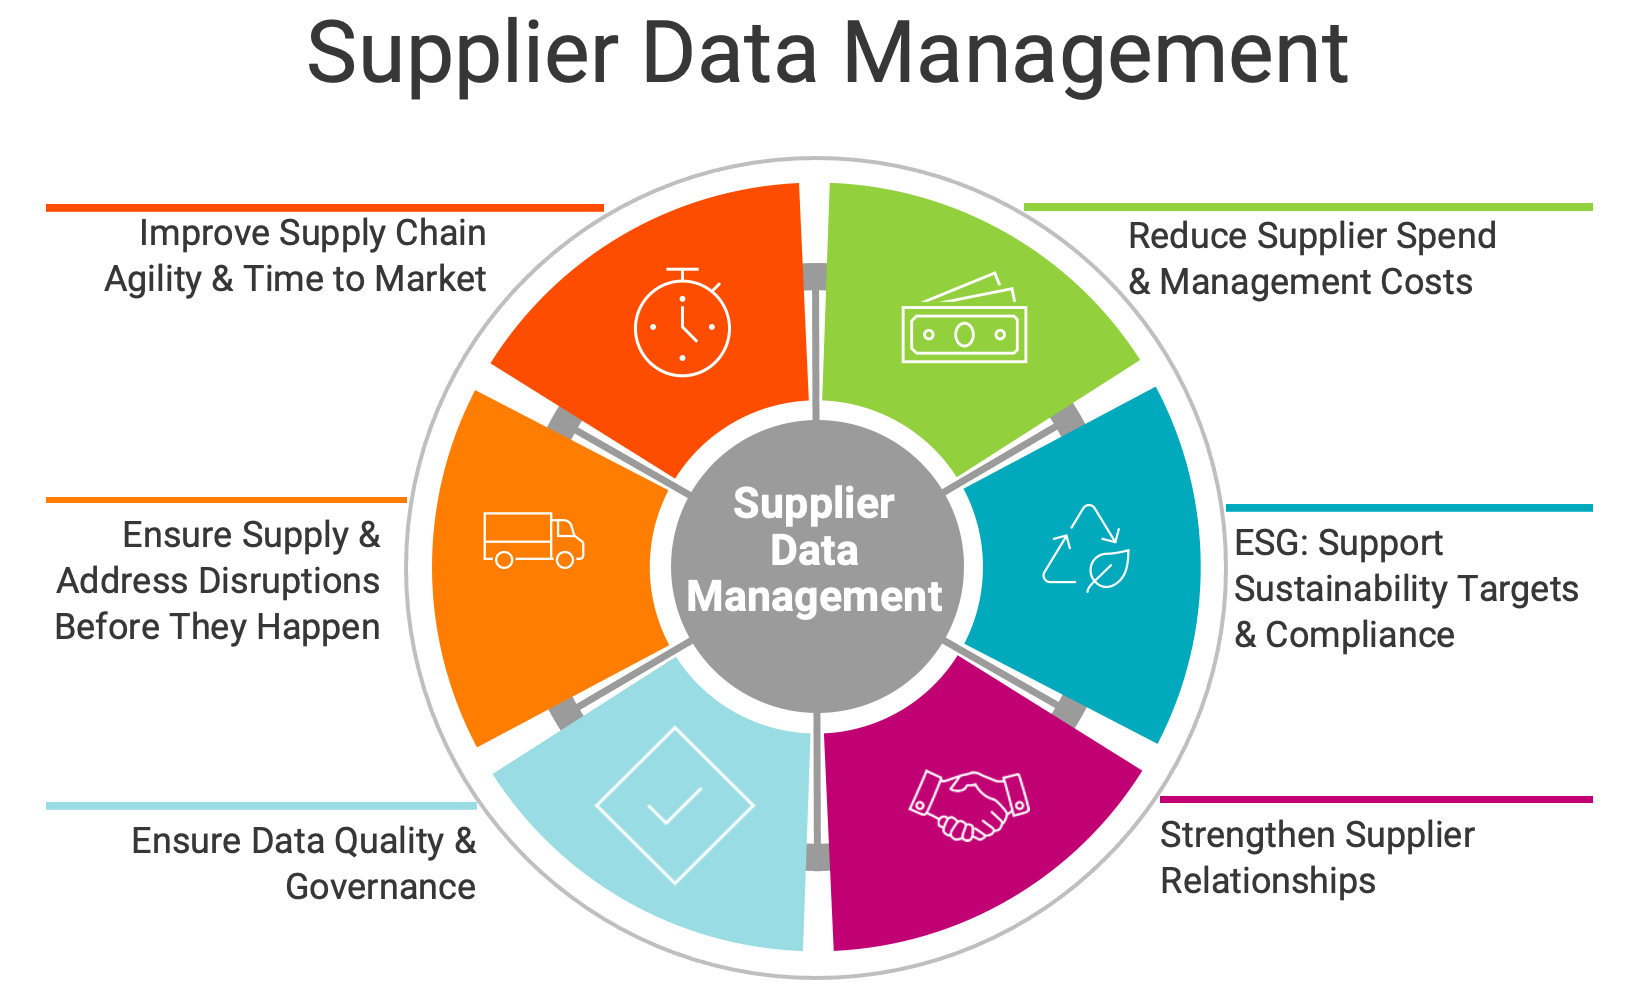 Supplier Data Management Benefits